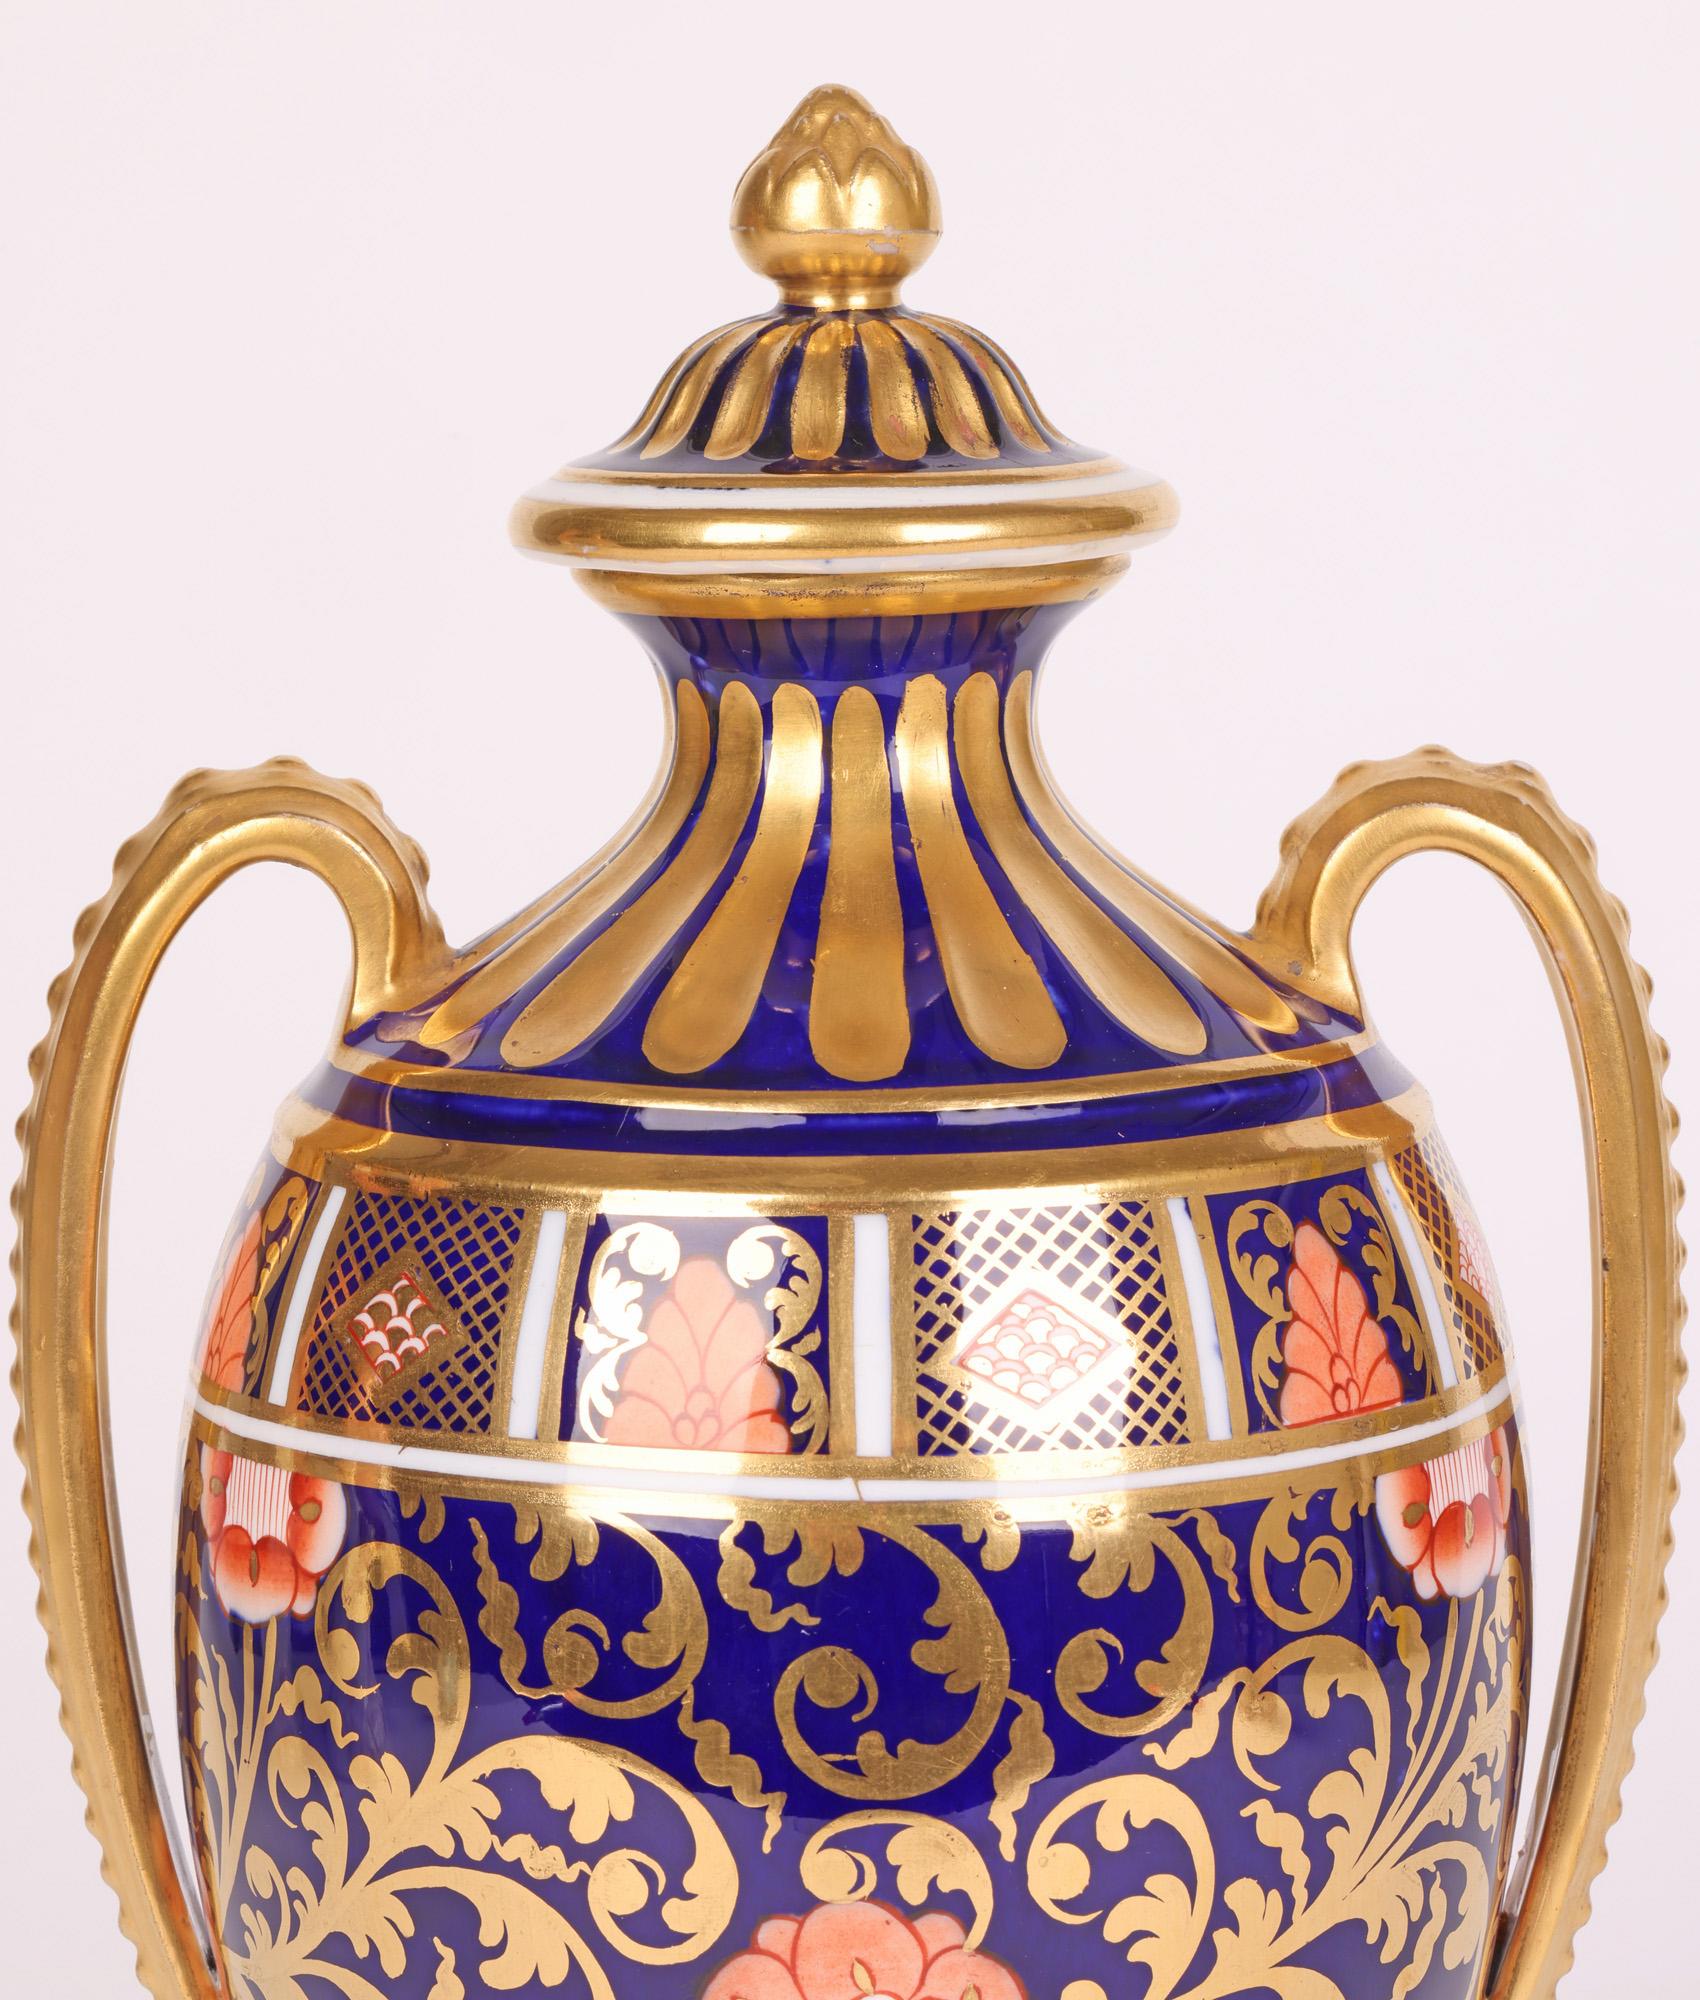 Superbe vase antique en porcelaine en forme d'urne à deux anses et couvercle décoré d'un motif Imari par Copeland, Angleterre, datant du début du 20e siècle. Le vase repose sur un pied de piédestal carré avec une tige étroite et un corps de forme